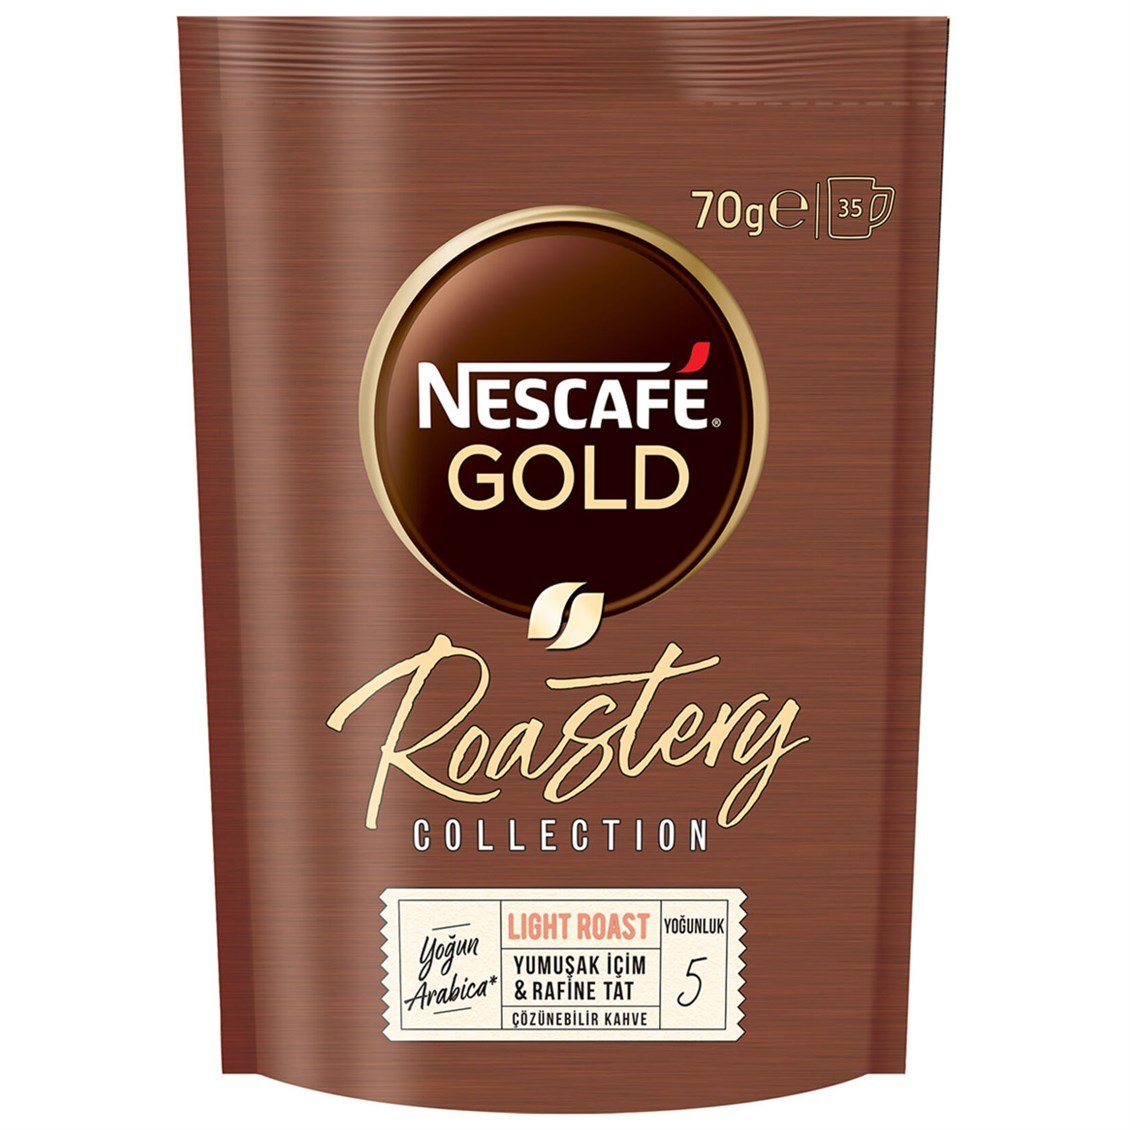 Nescafe Gold Roastery Light Roast Eko Paket 70 gr - Onur Market